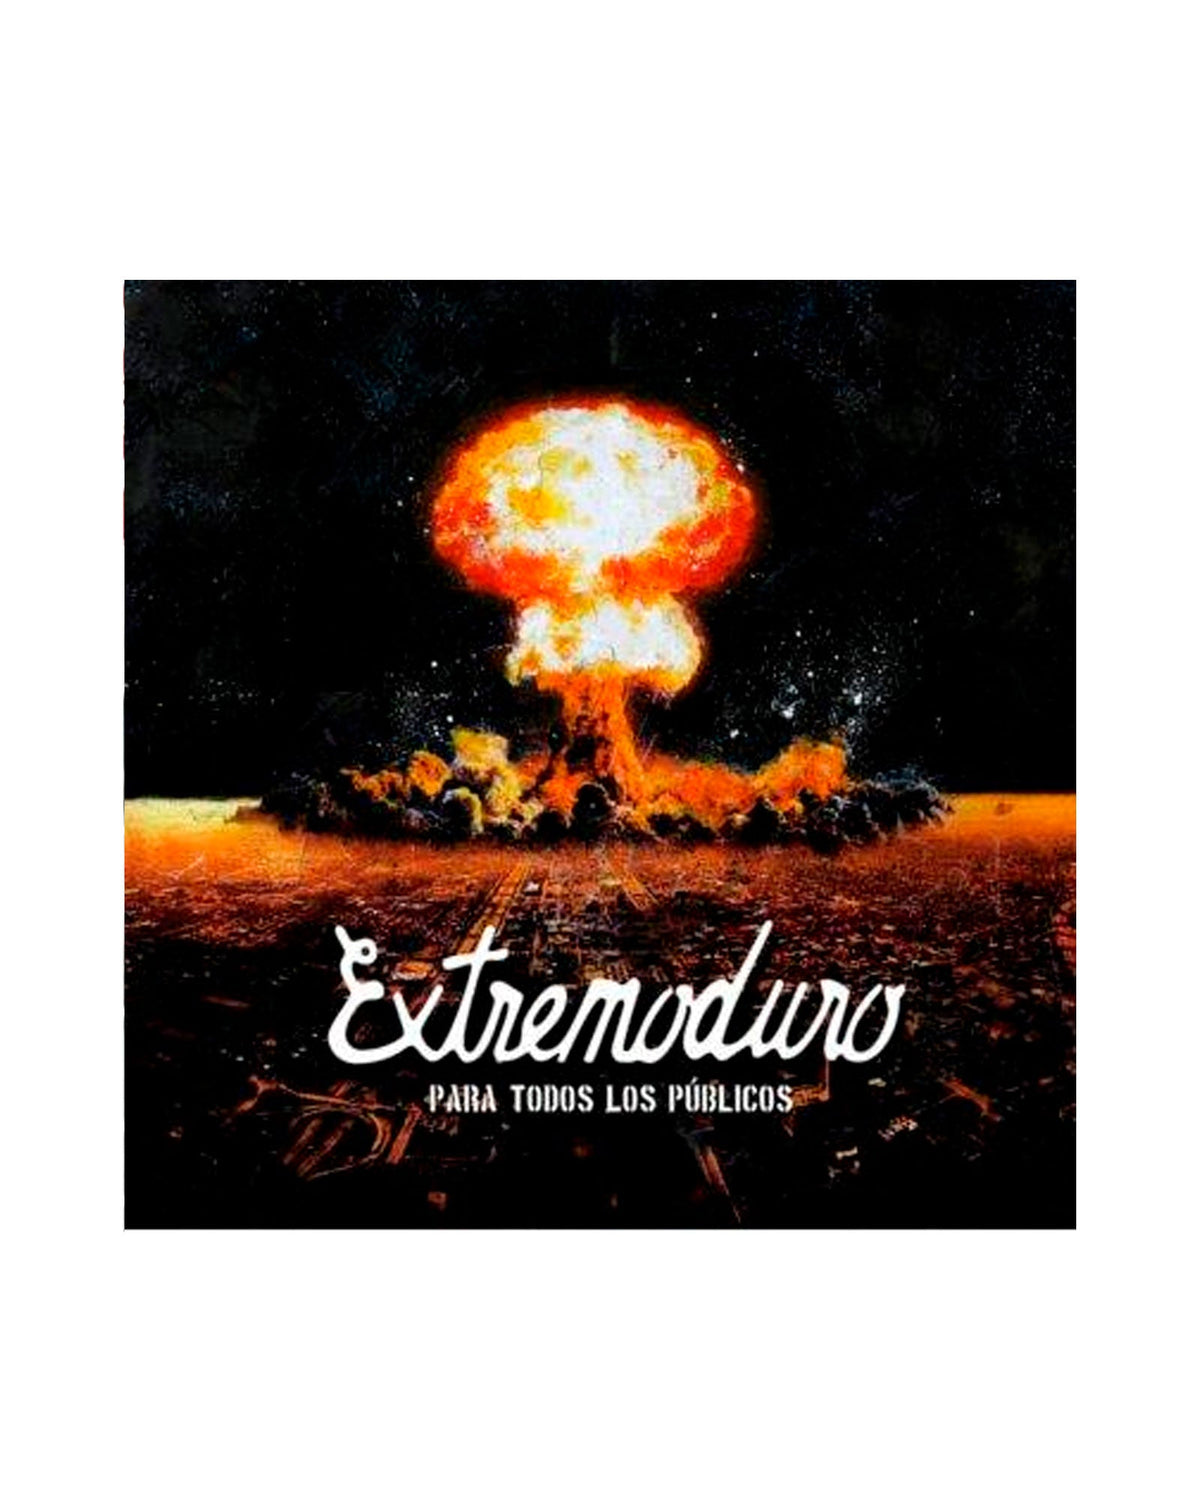 Extremoduro Vinilo-LP + CD "Para Todos Los Públicos" - Rocktud - Rocktud